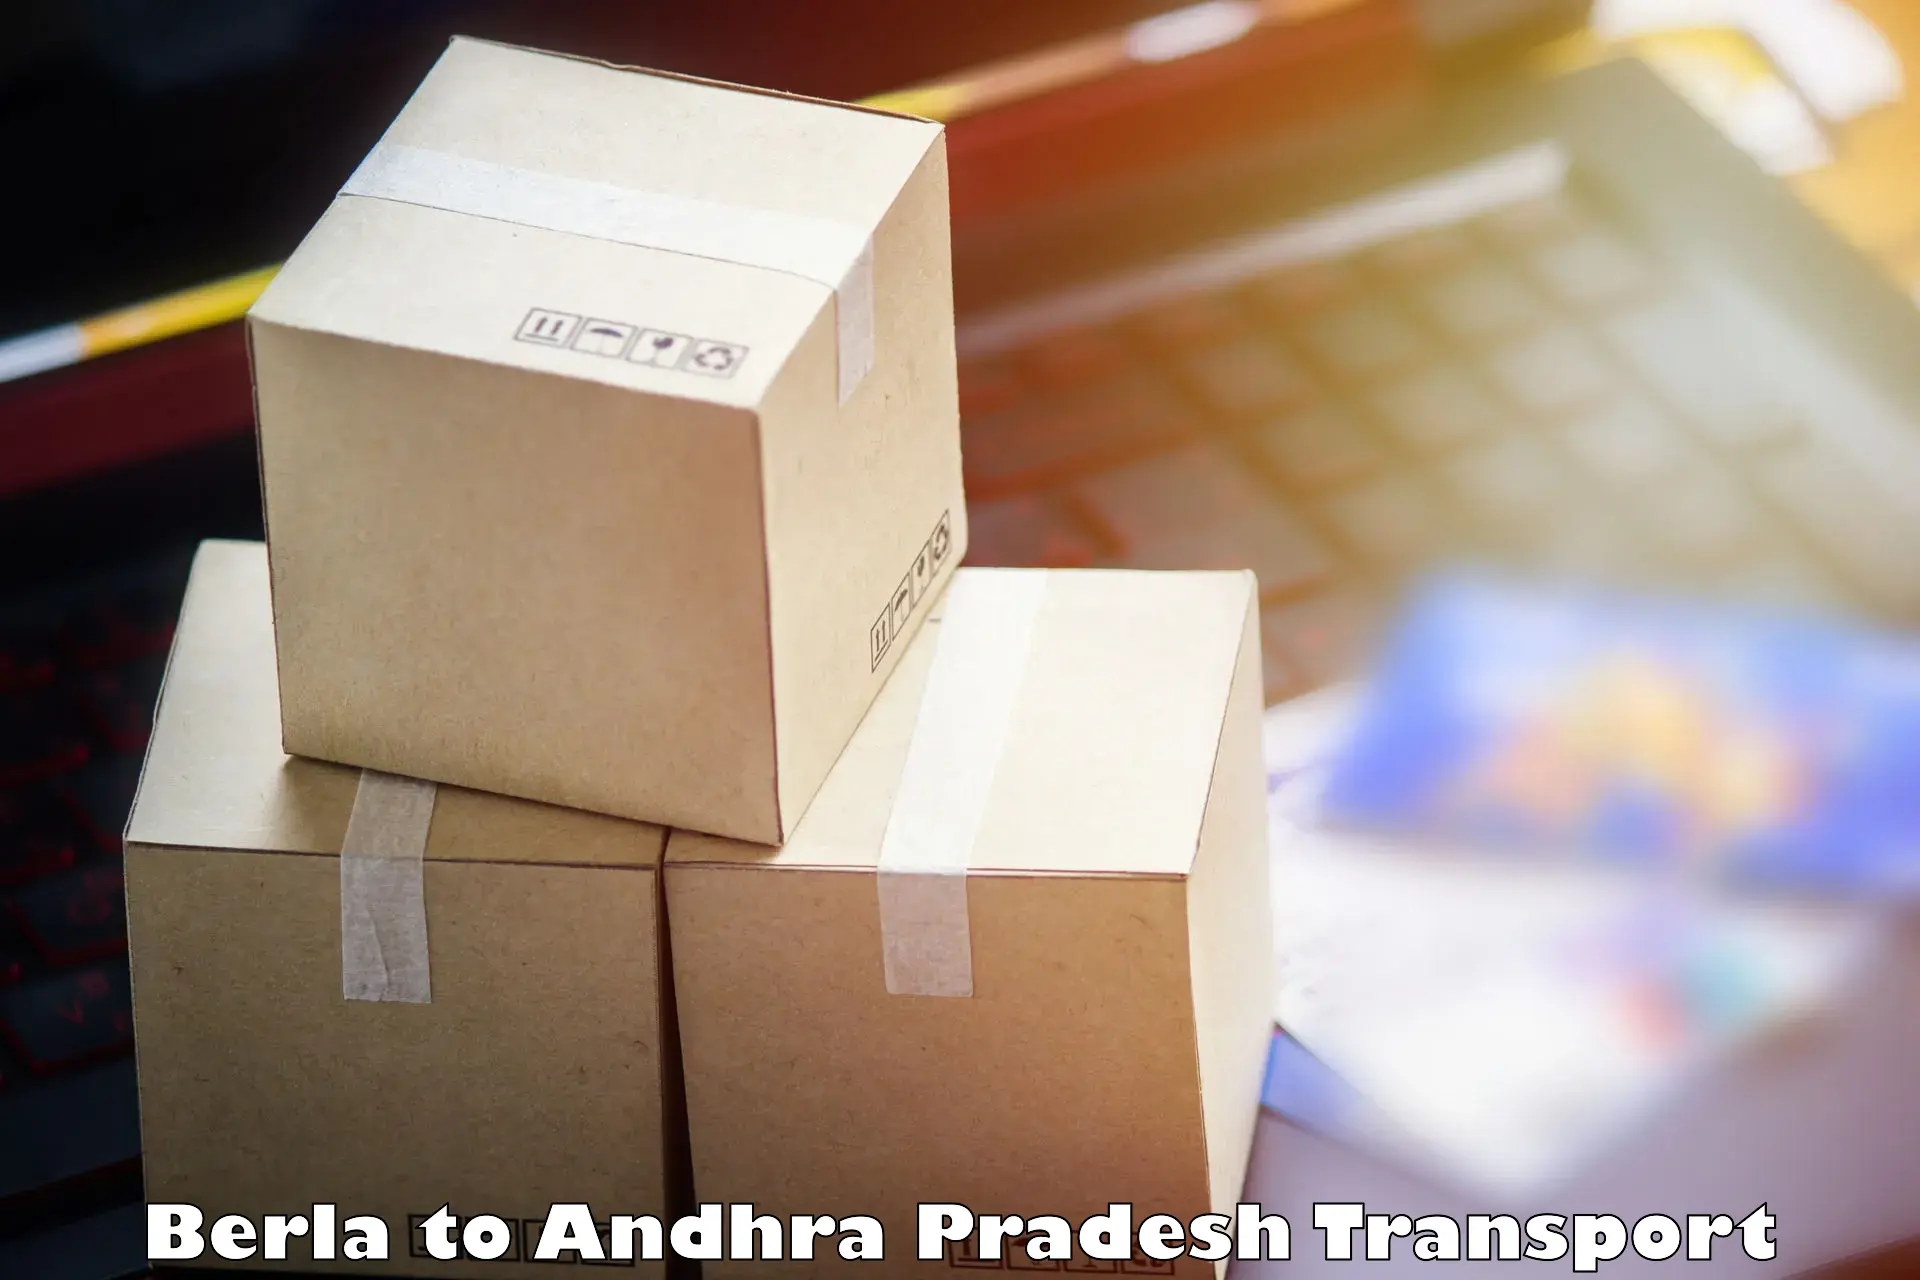 Air cargo transport services Berla to Andhra Pradesh